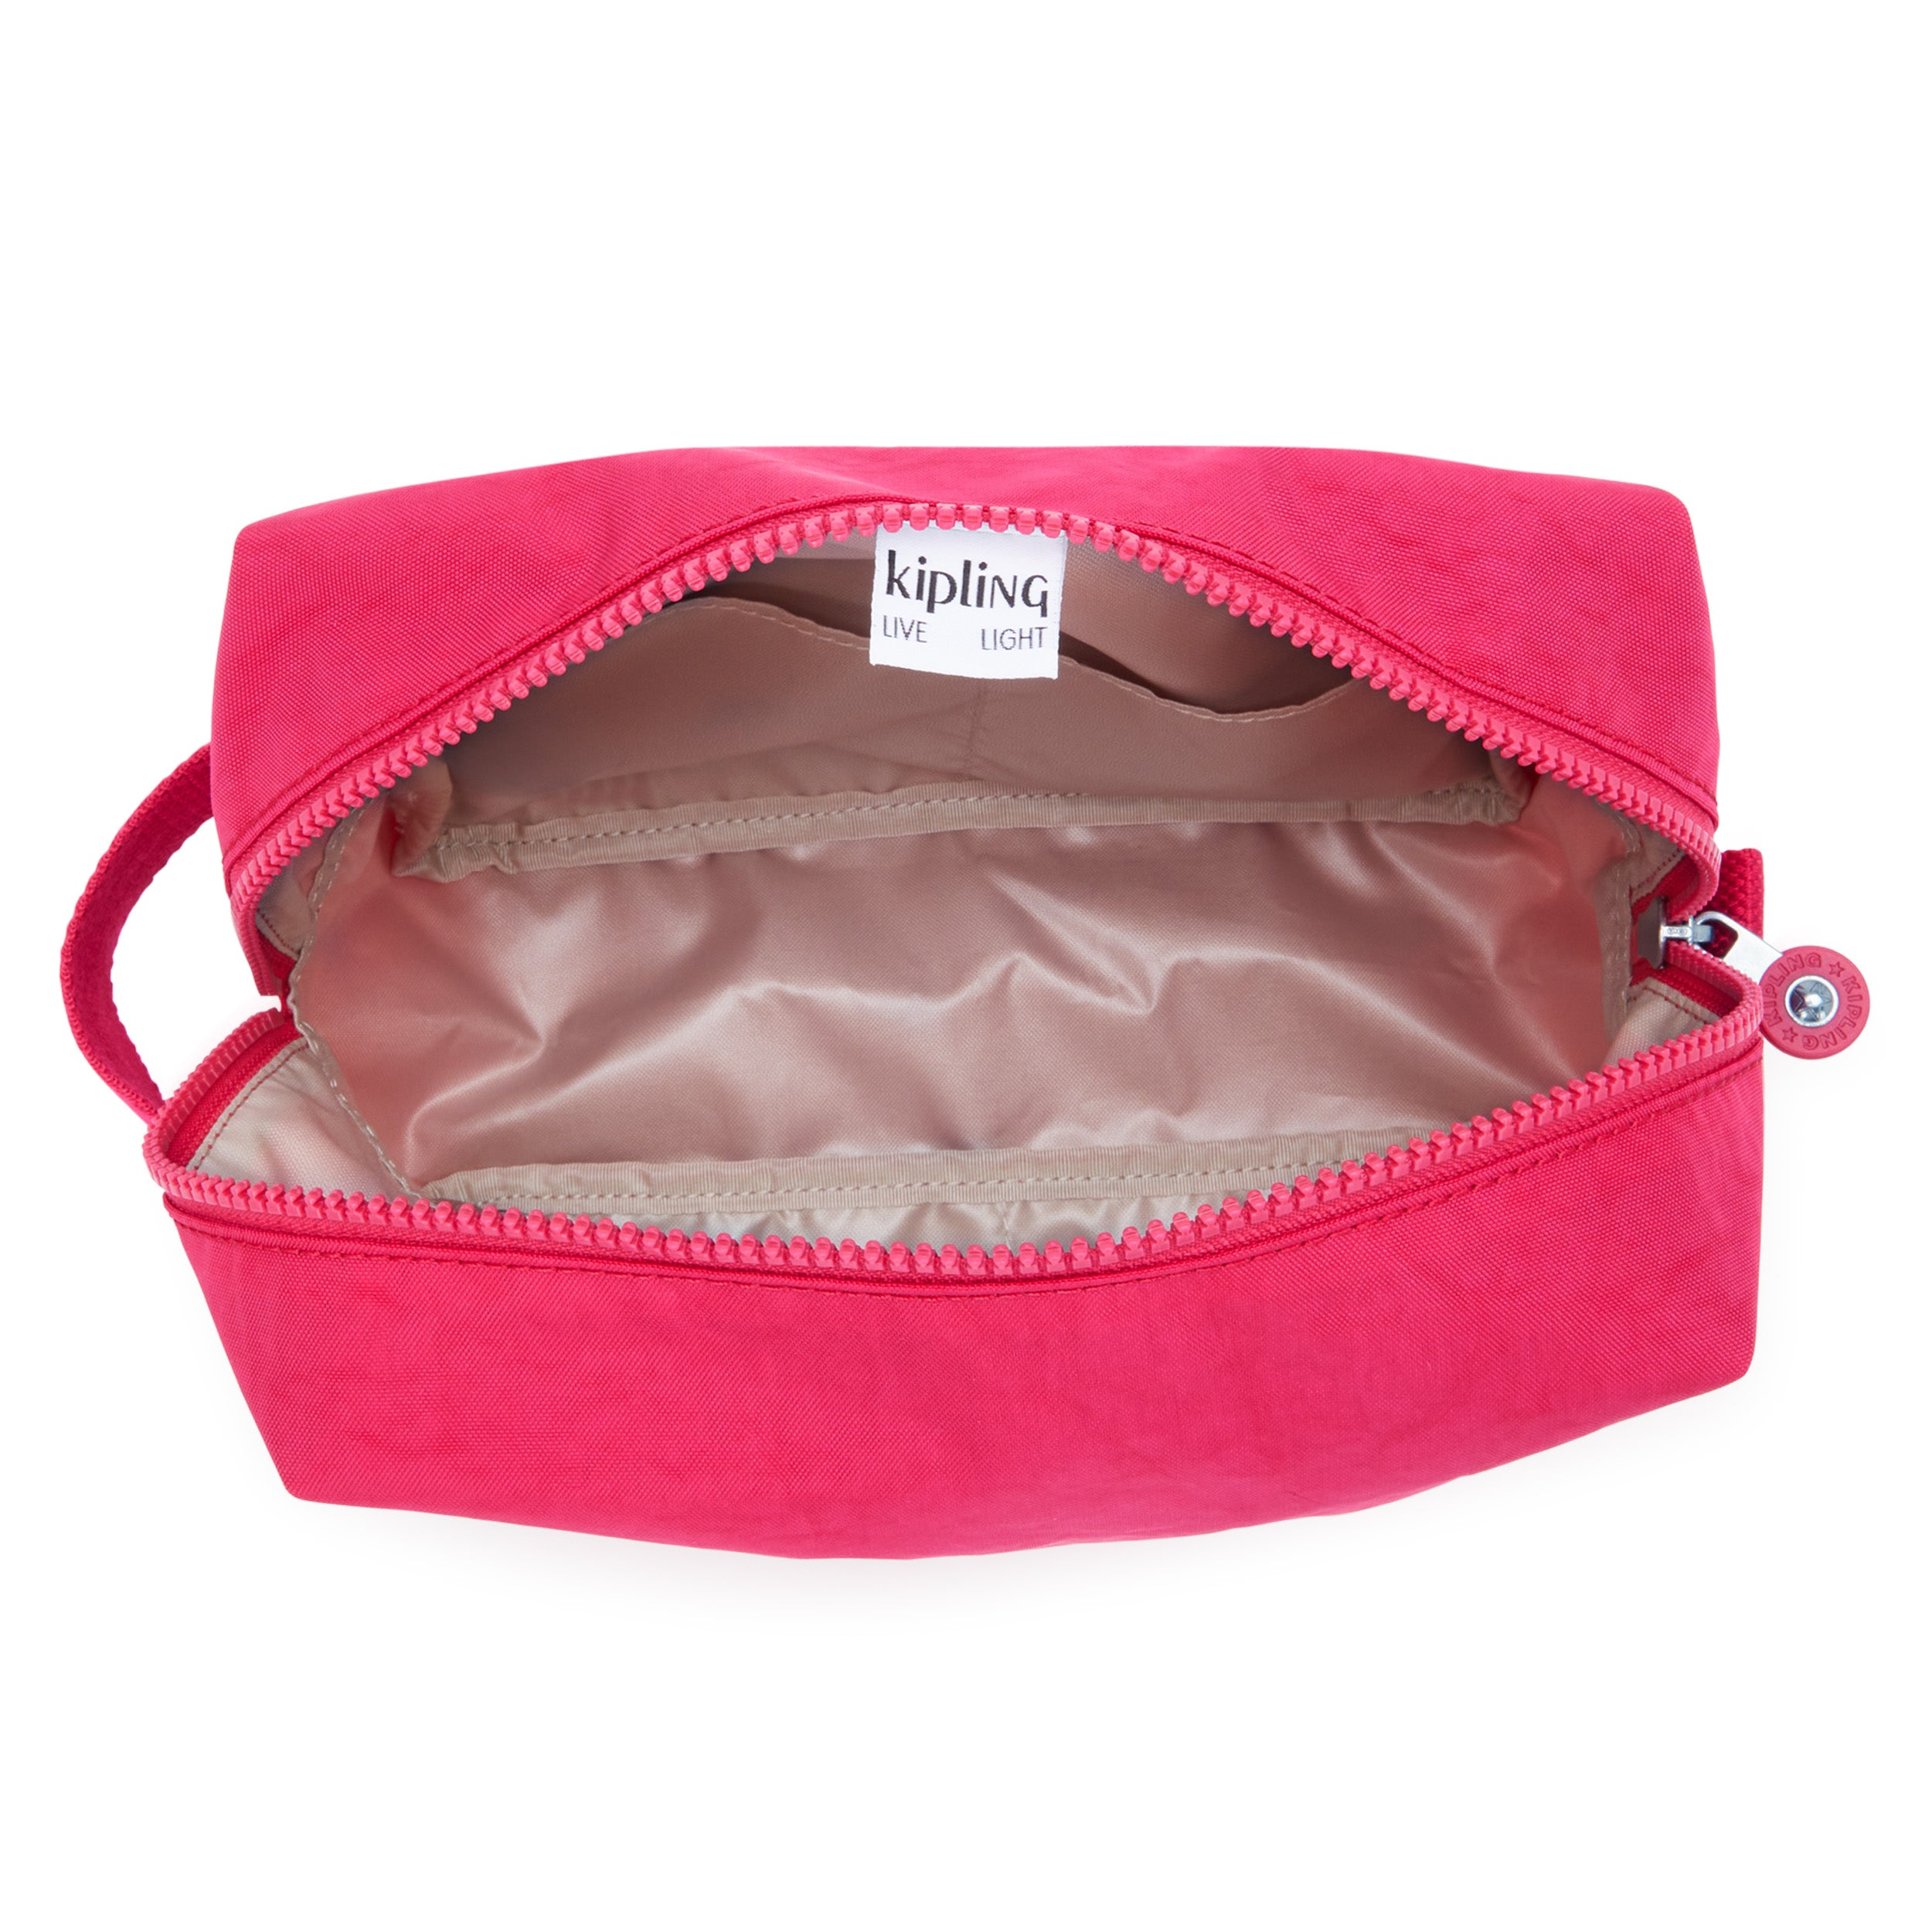 KIPLING-Parac-Large toiletry bag-Confetti Pink-I2887-T73